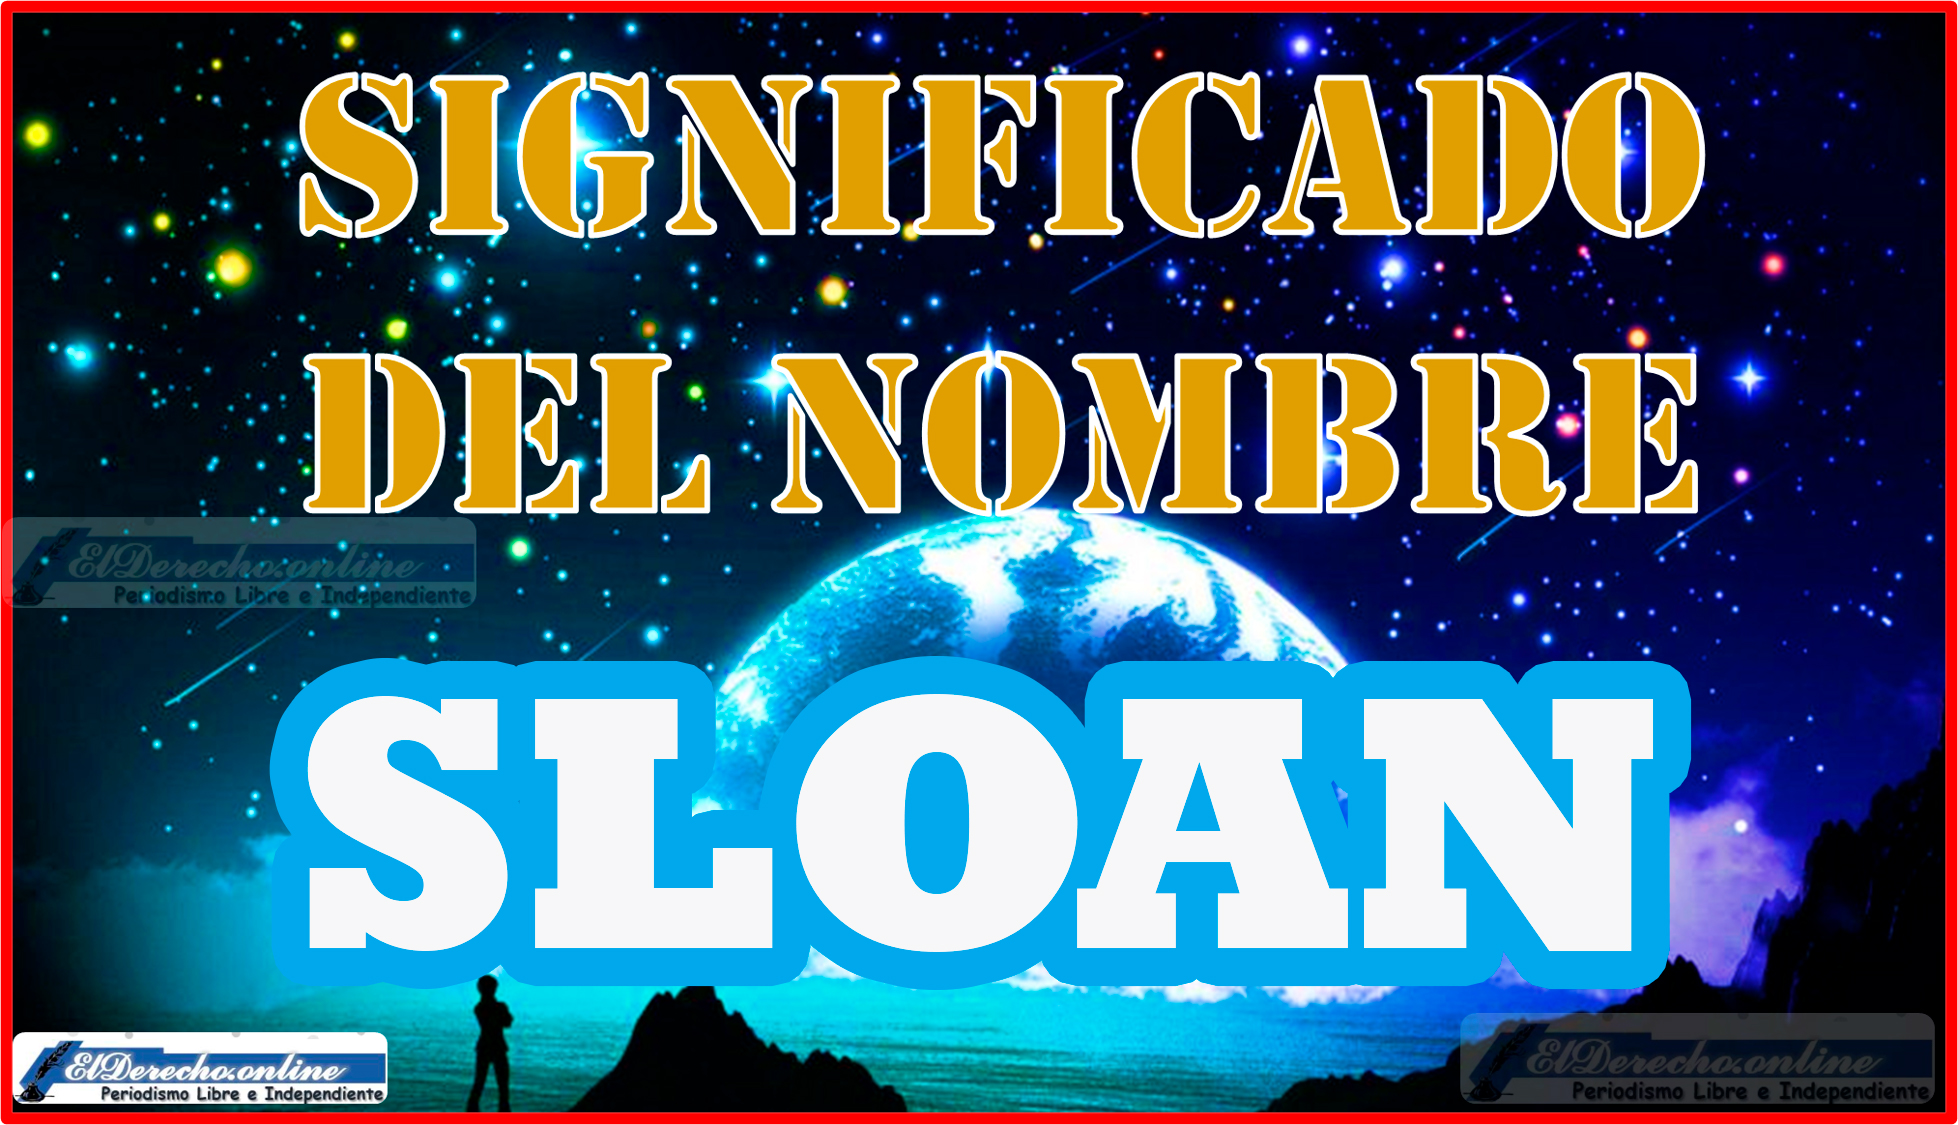 Significado del nombre Sloan: Un nombre de gran historia y encanto